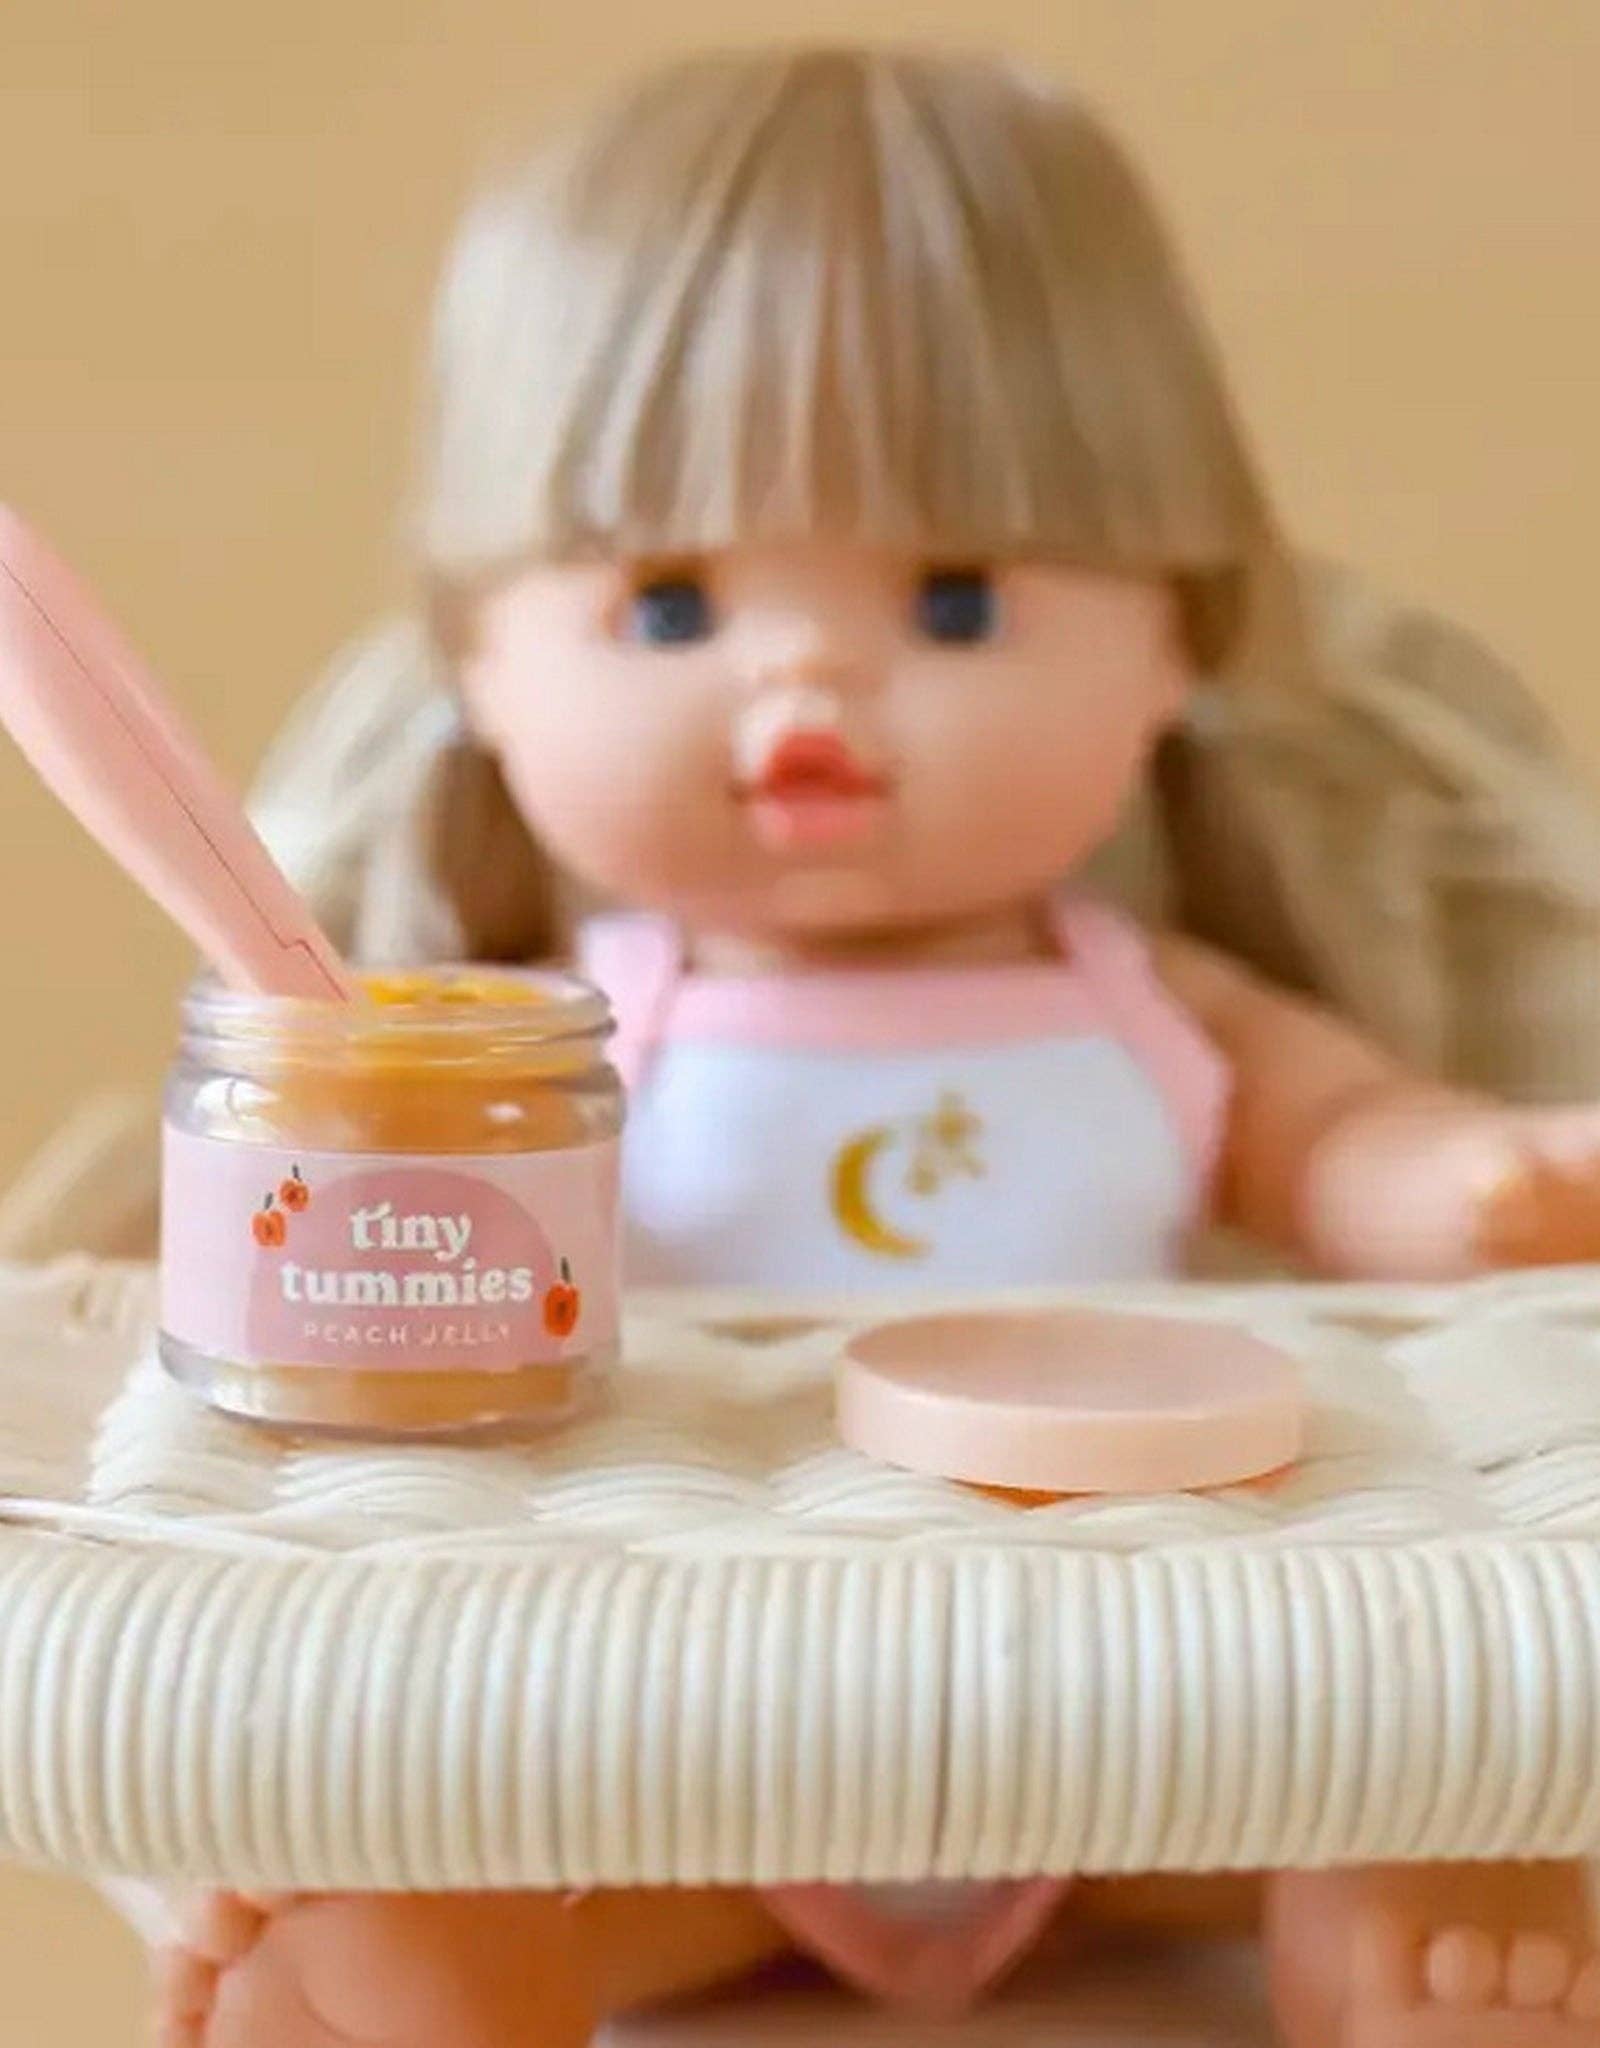 Tiny Tummies - Peach jelly food - Jar and spoon - Tiny Harlow